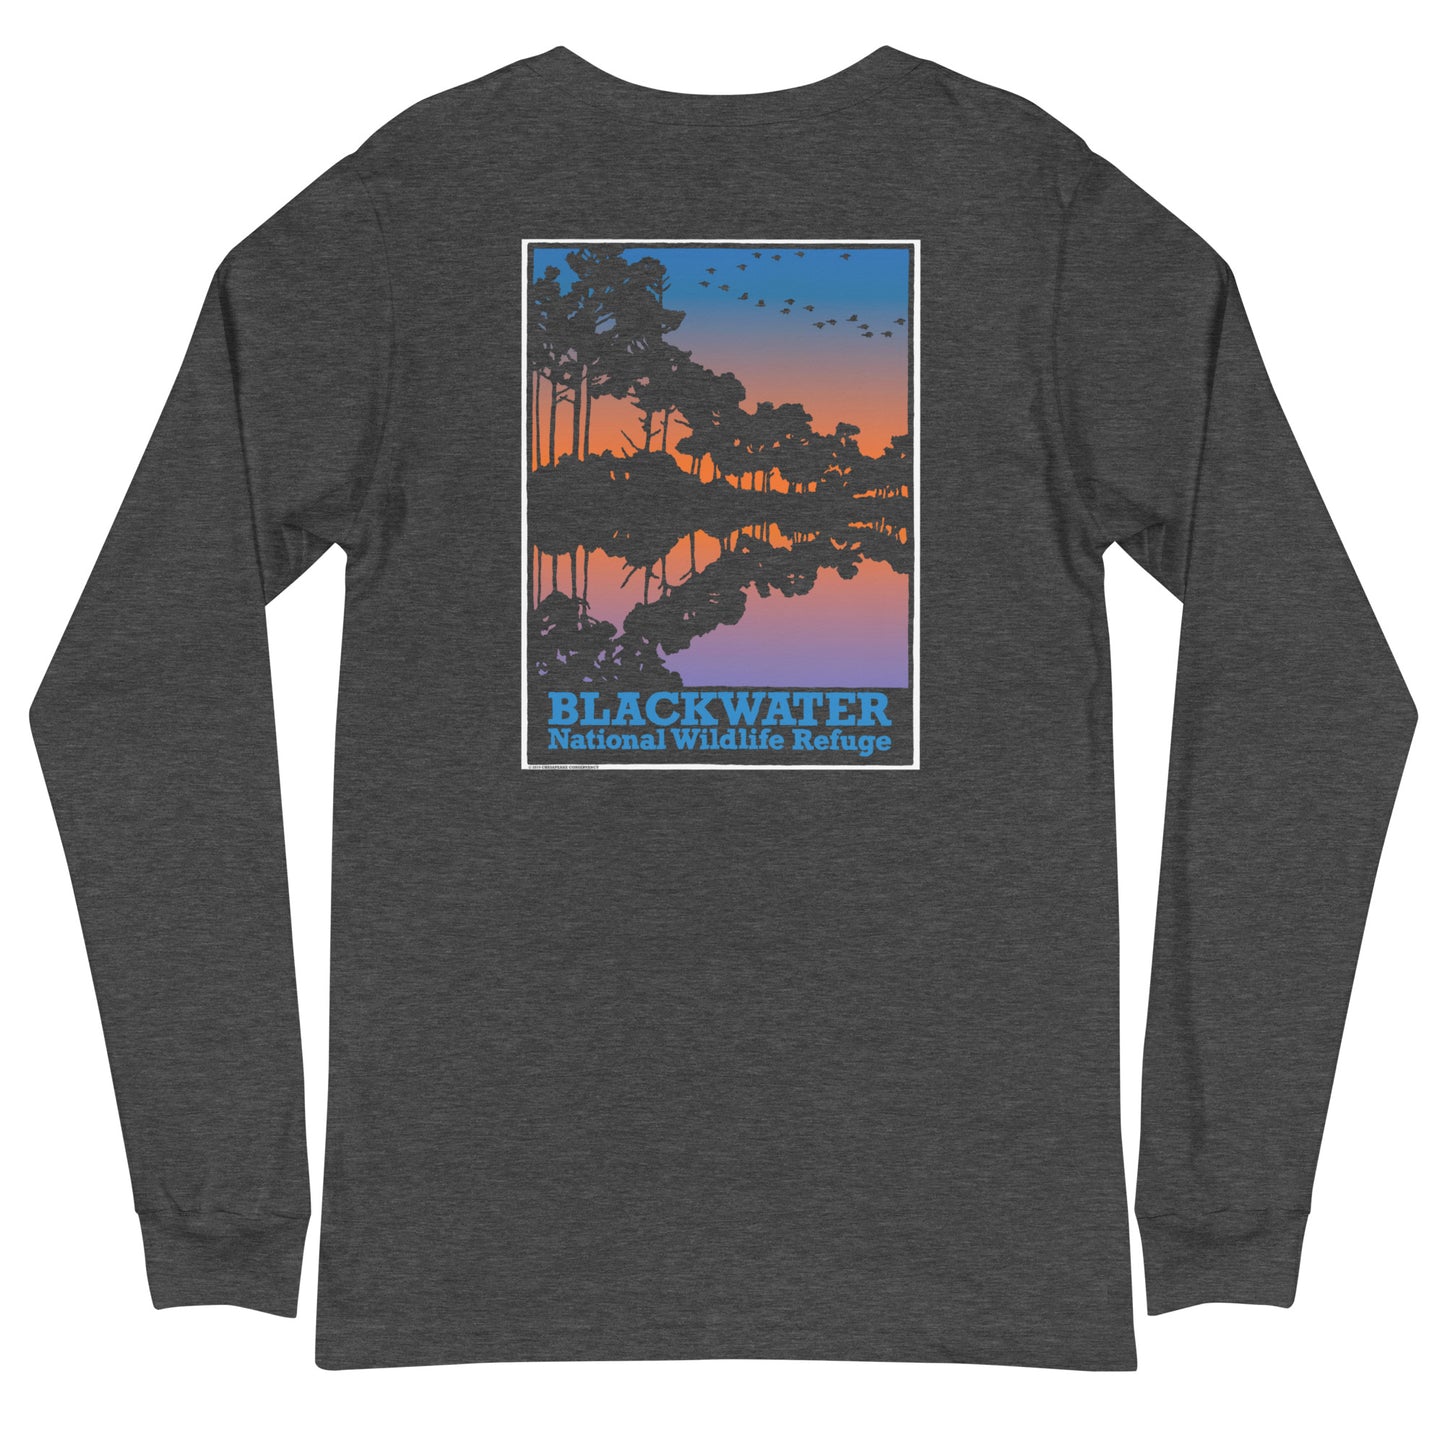 Blackwater NWR - Unisex Long Sleeve Shirt